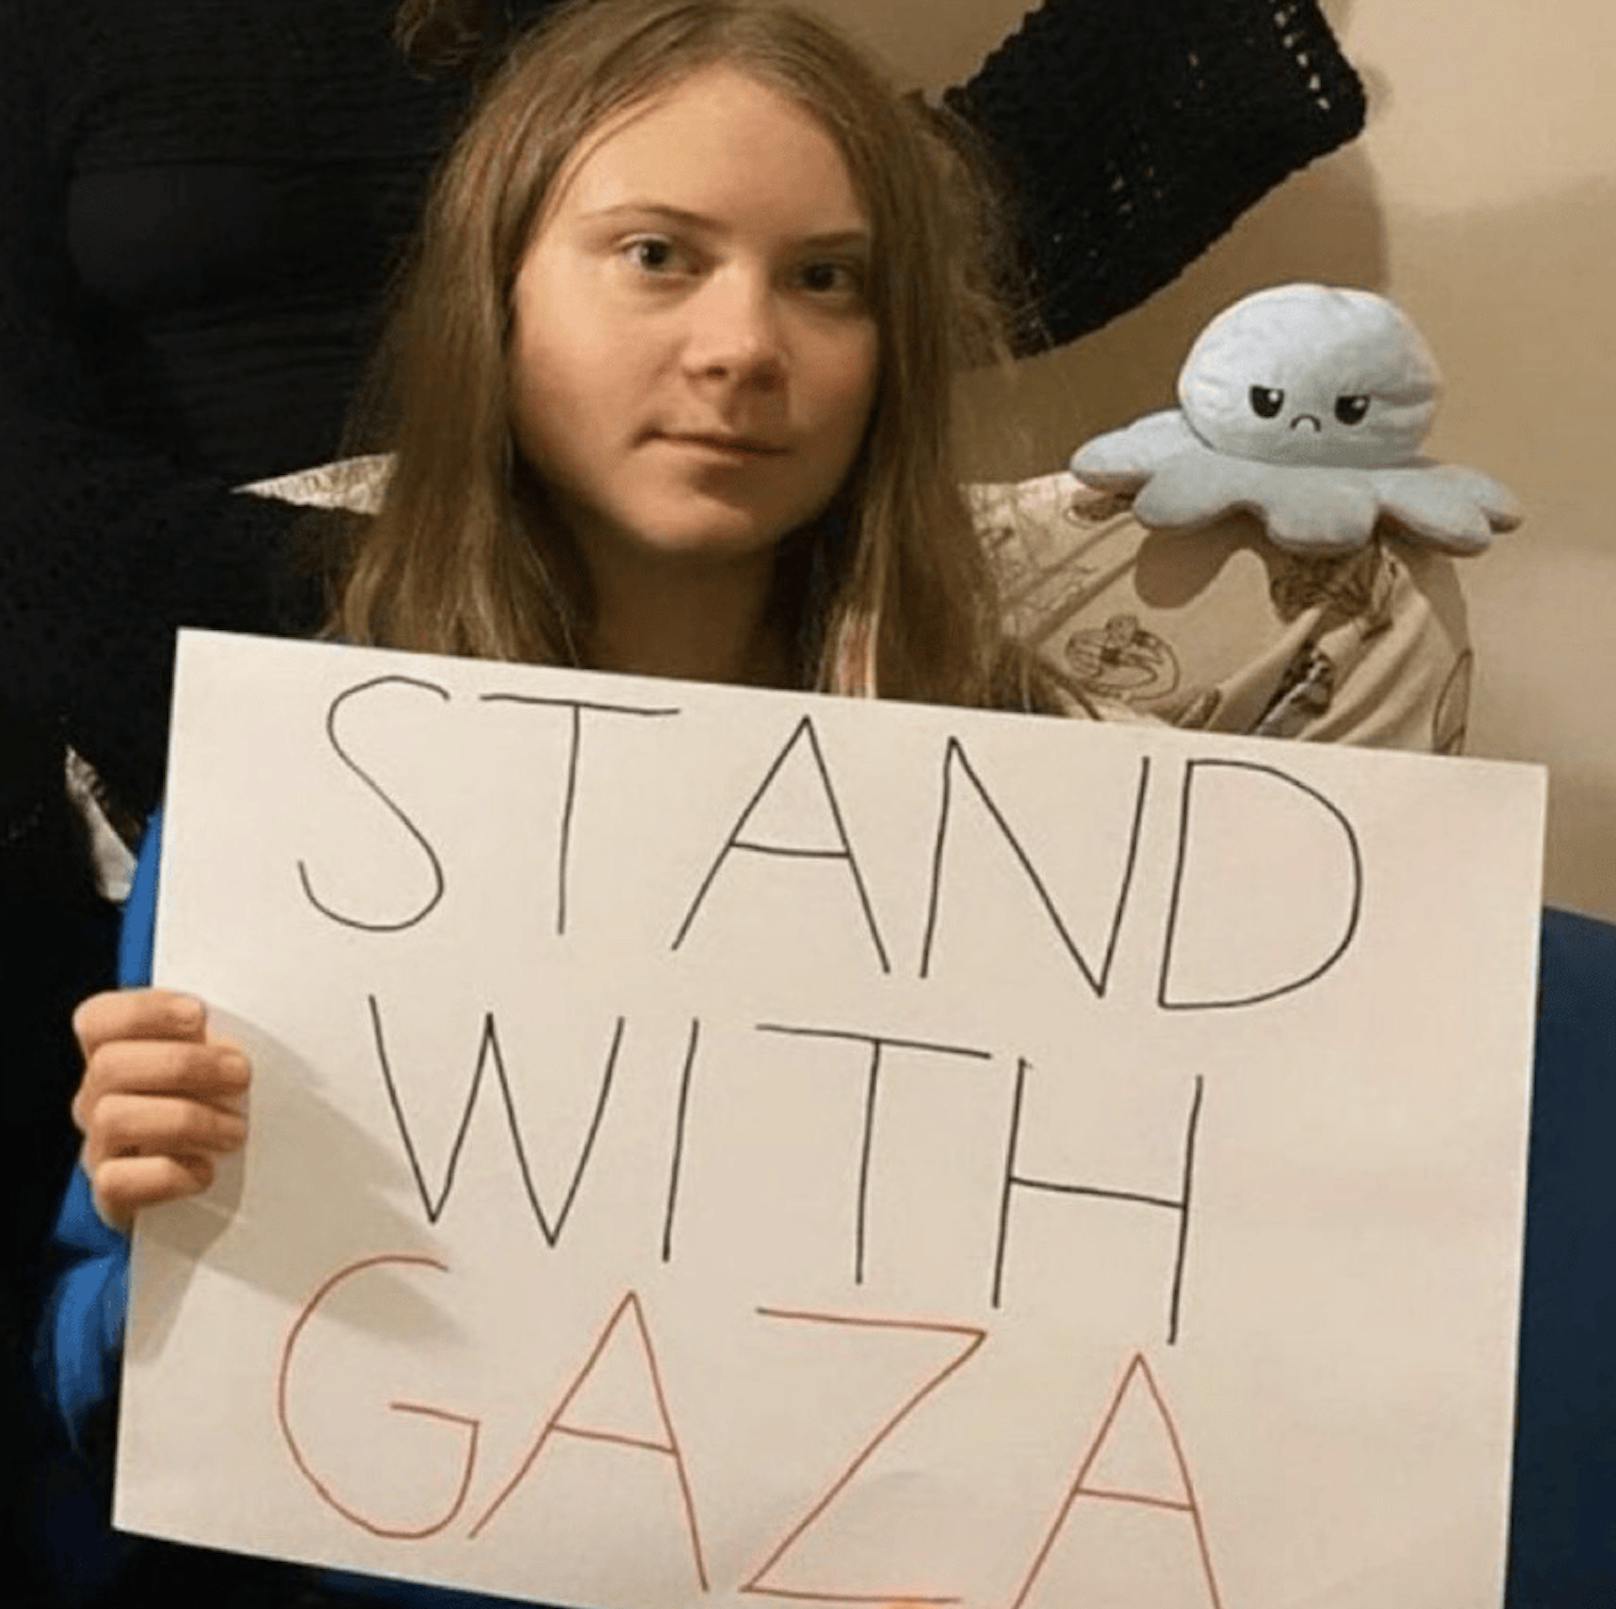 "Heute streiken wir aus Solidarität mit Palästina und Gaza", schrieb Greta Thunberg auf Twitter. Die israelischen Todesopfer erwähnte sie mit keinem Wort. Dies sorgte für scharfe Kritik.